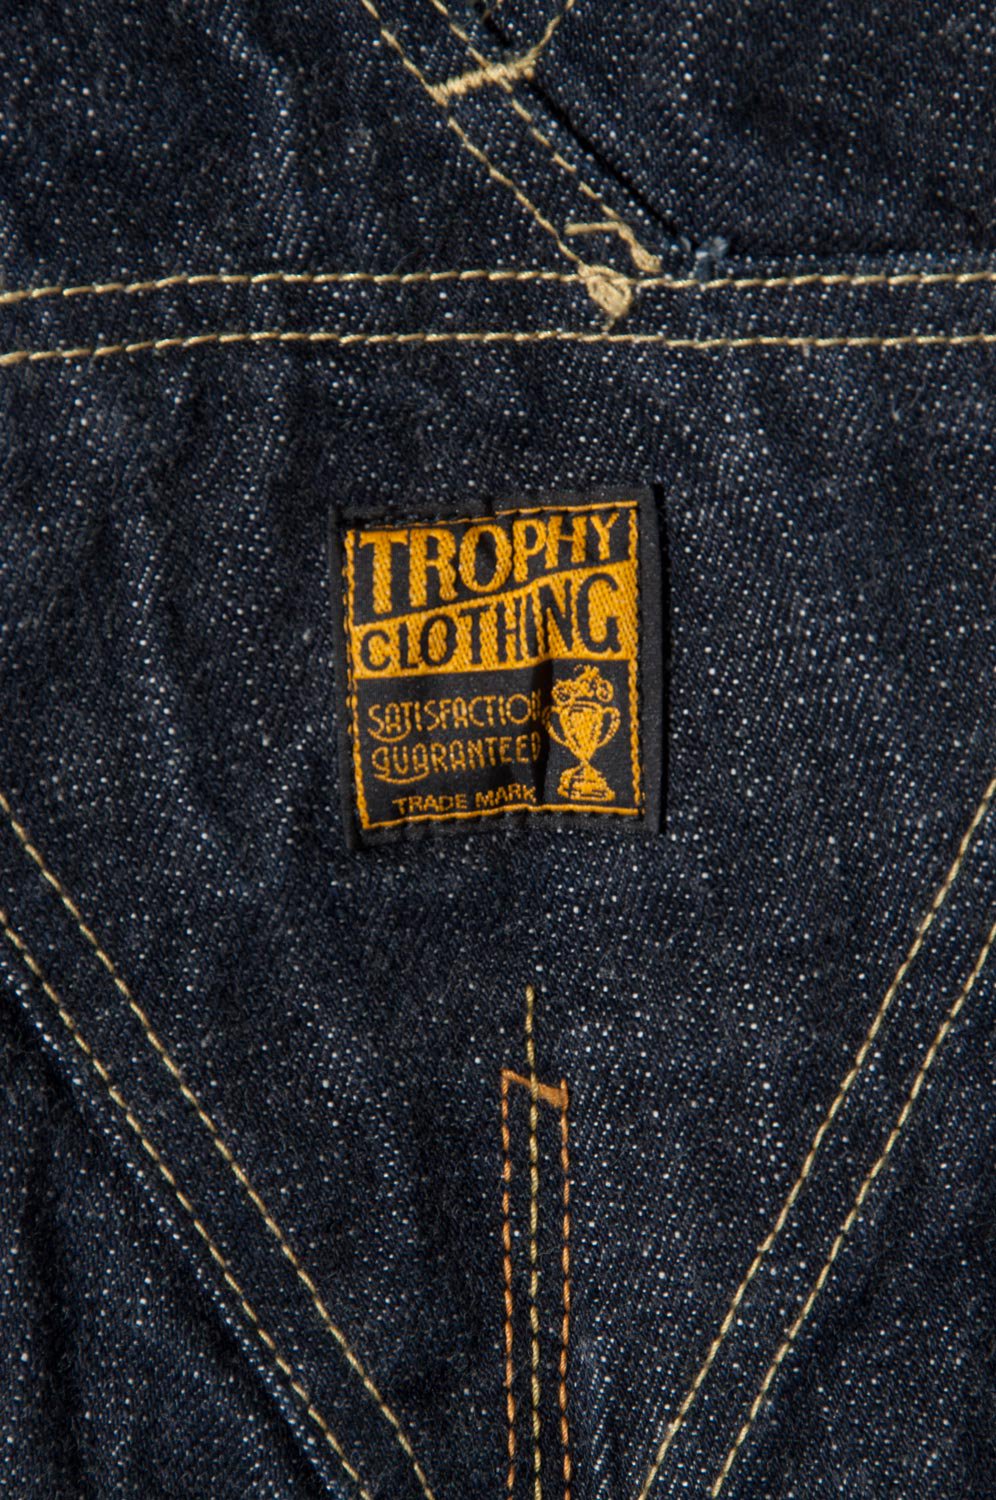 TROPHY CLOTHING(トロフィークロージング) オーバーオール 1603 CARPENTER OVERALLS 通販正規取扱 |  ハーレムストア